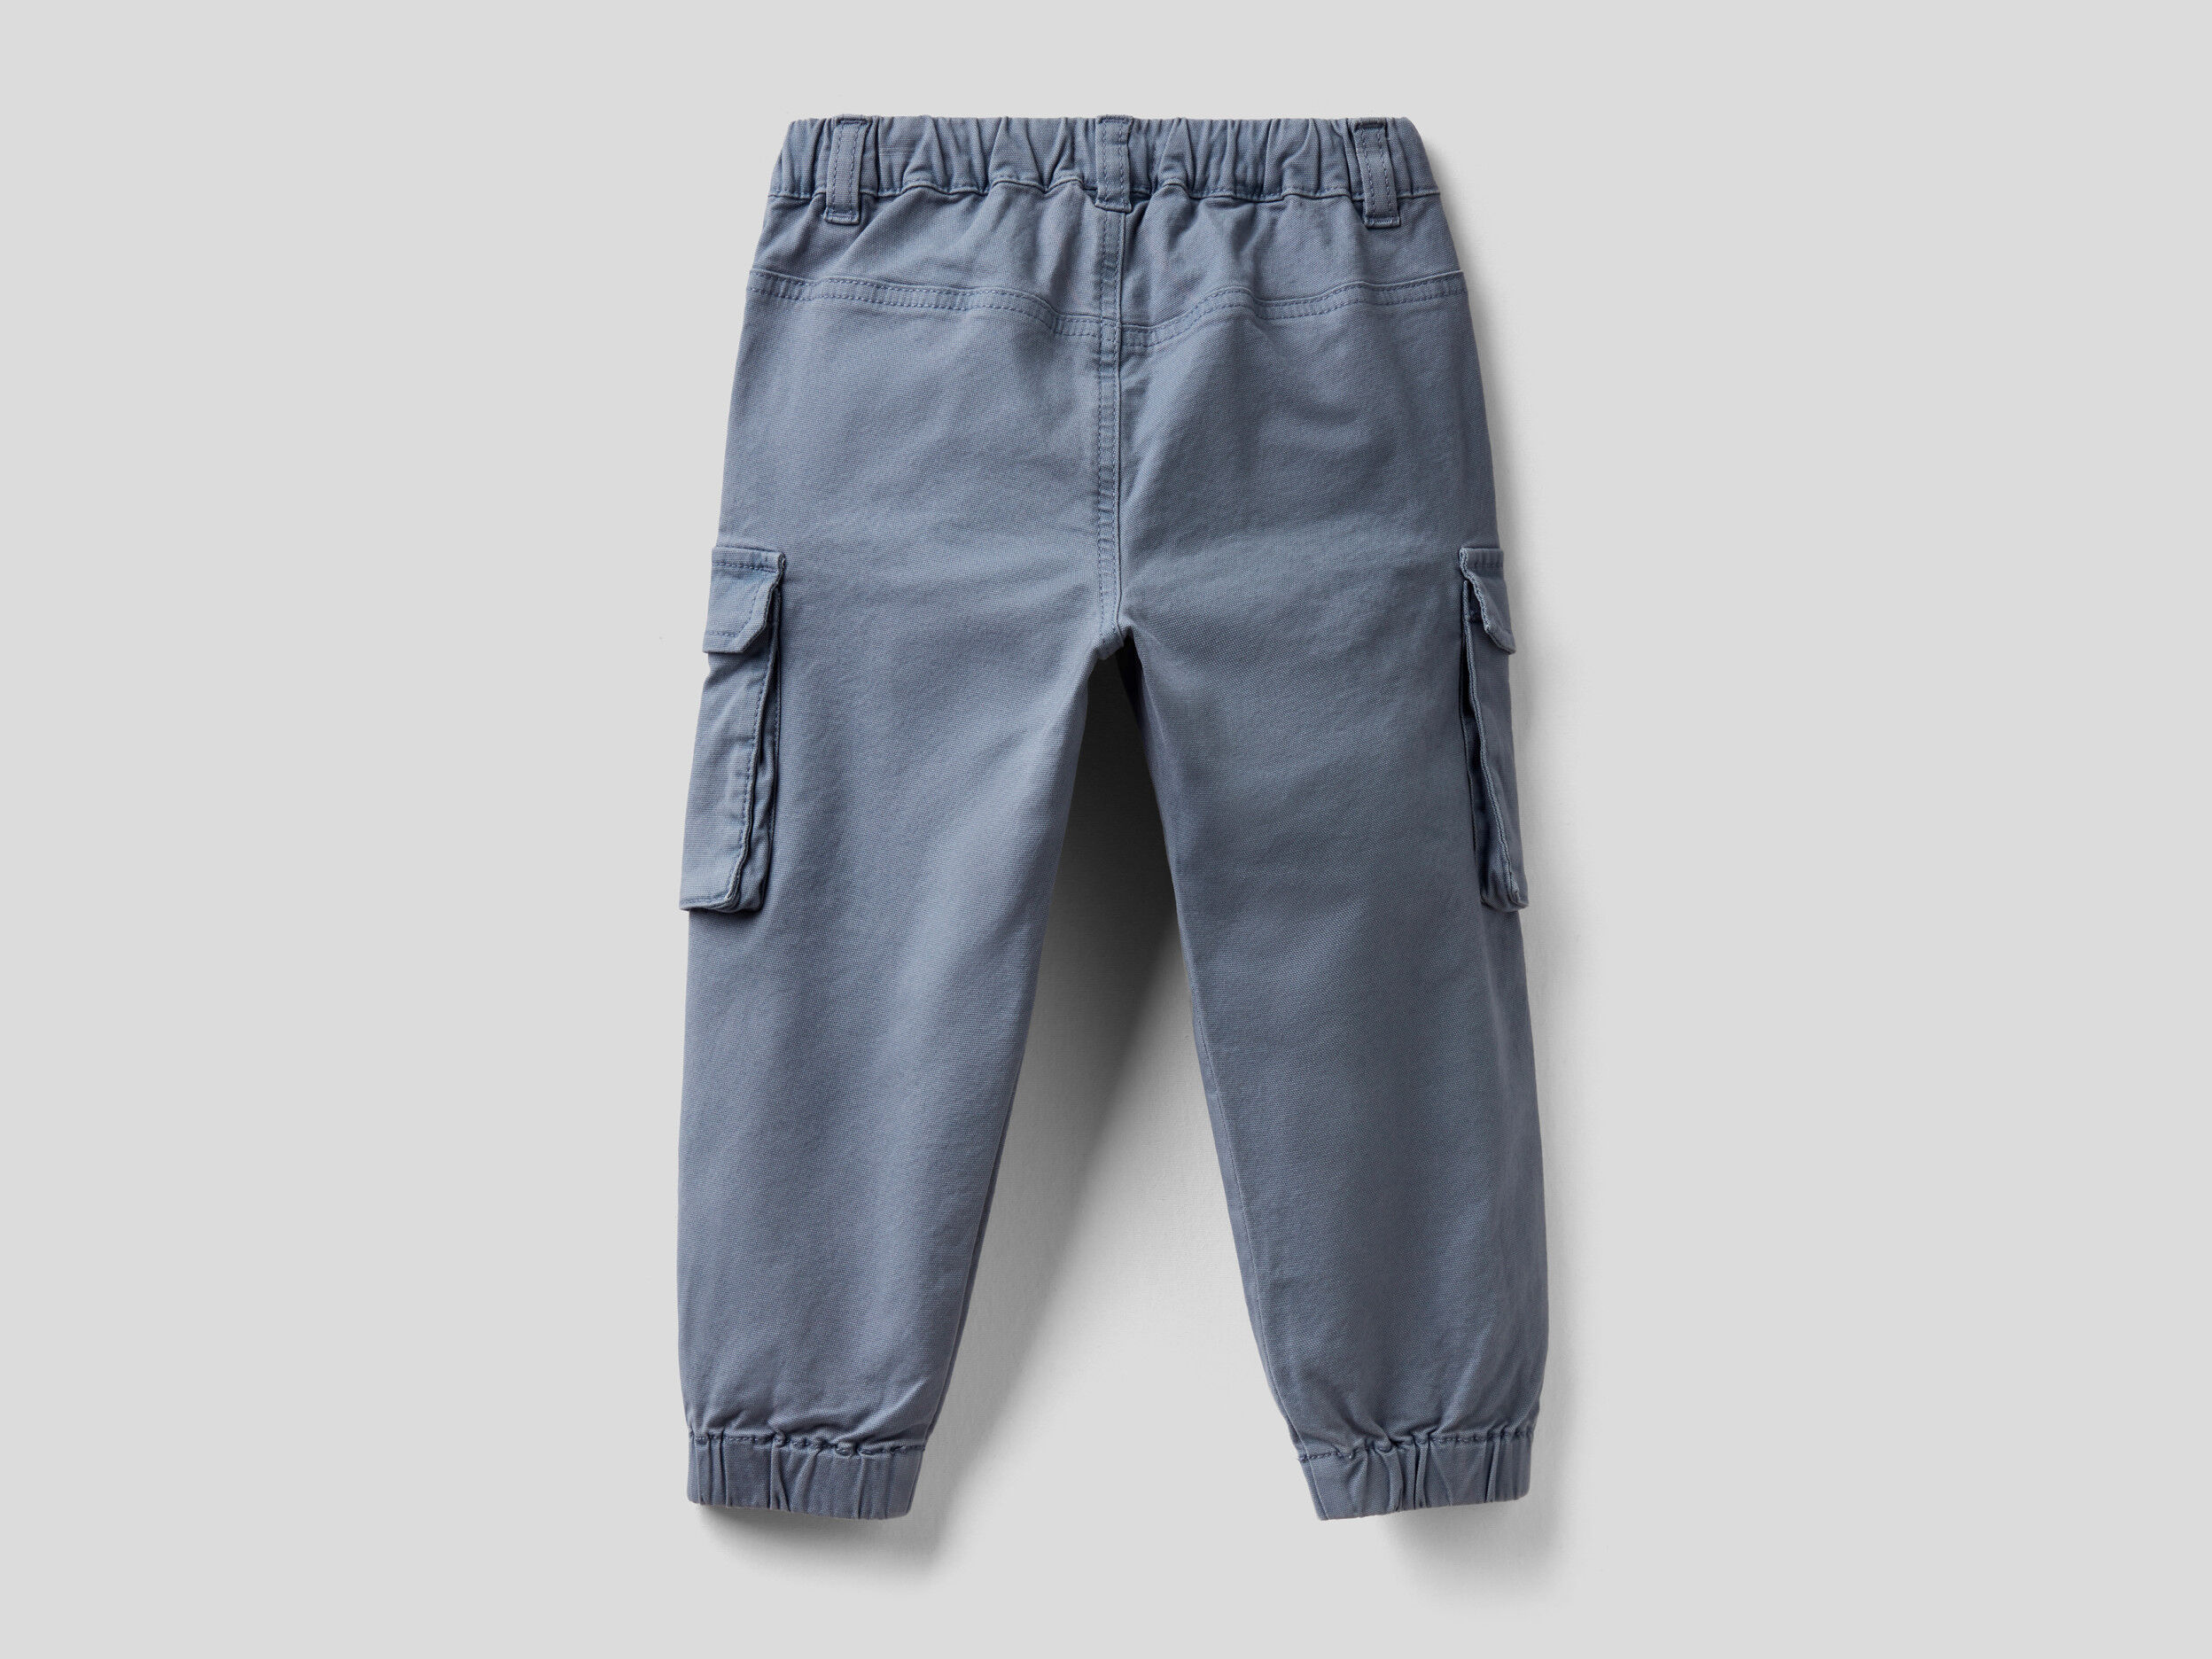 Pantaloni Cargo In Cotone Stretch United Colors of Benetton Abbigliamento Pantaloni e jeans Pantaloni Pantaloni cargo 